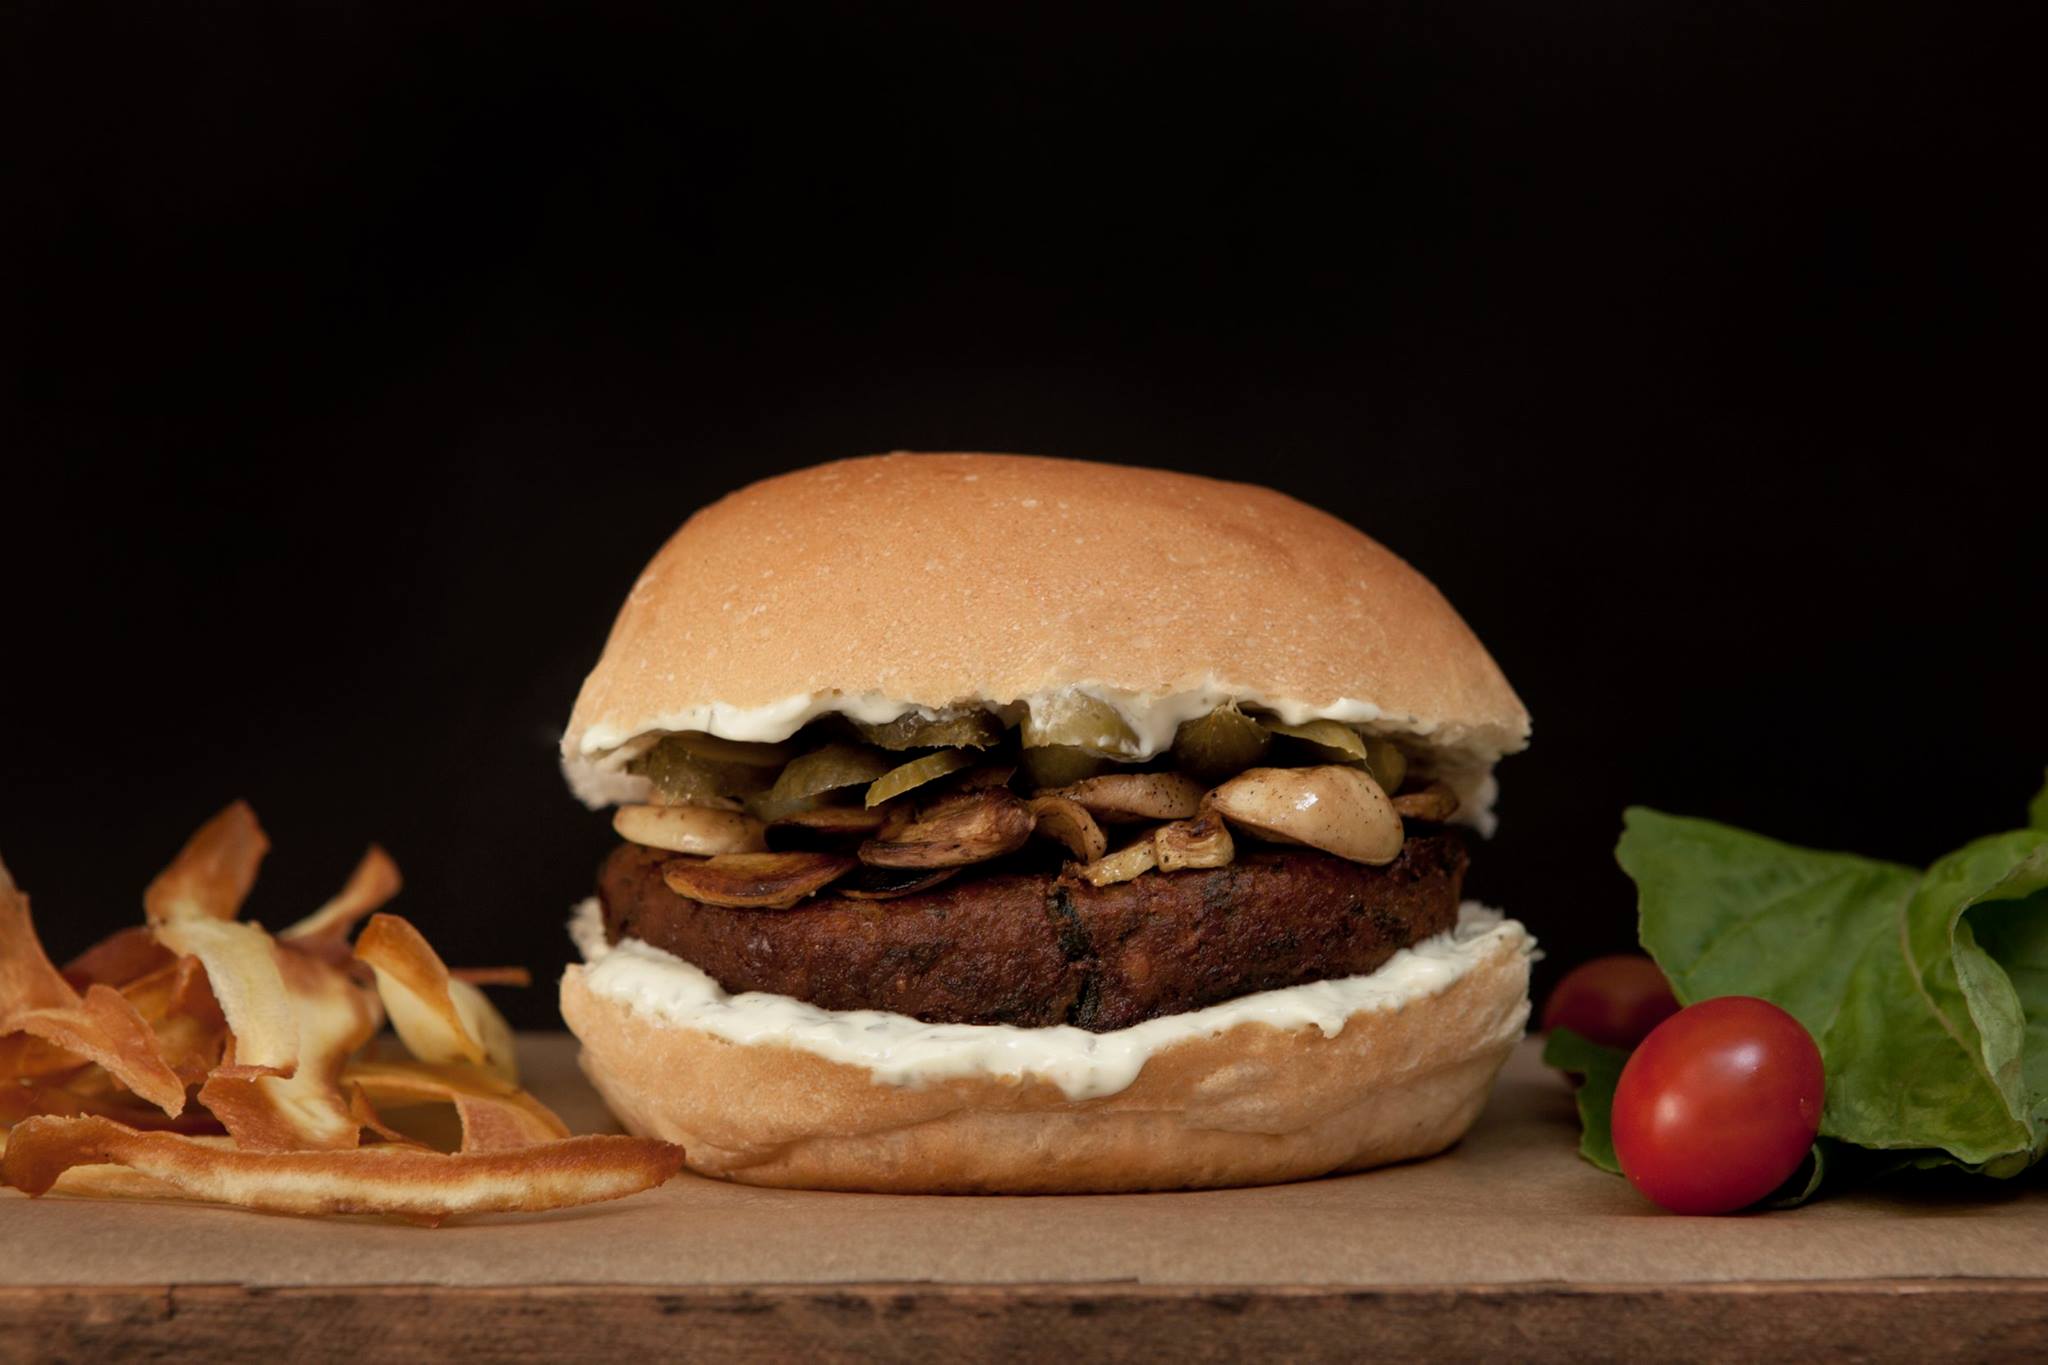 Restaurantes: Região da rua Augusta ganha nova hamburgueria vegana